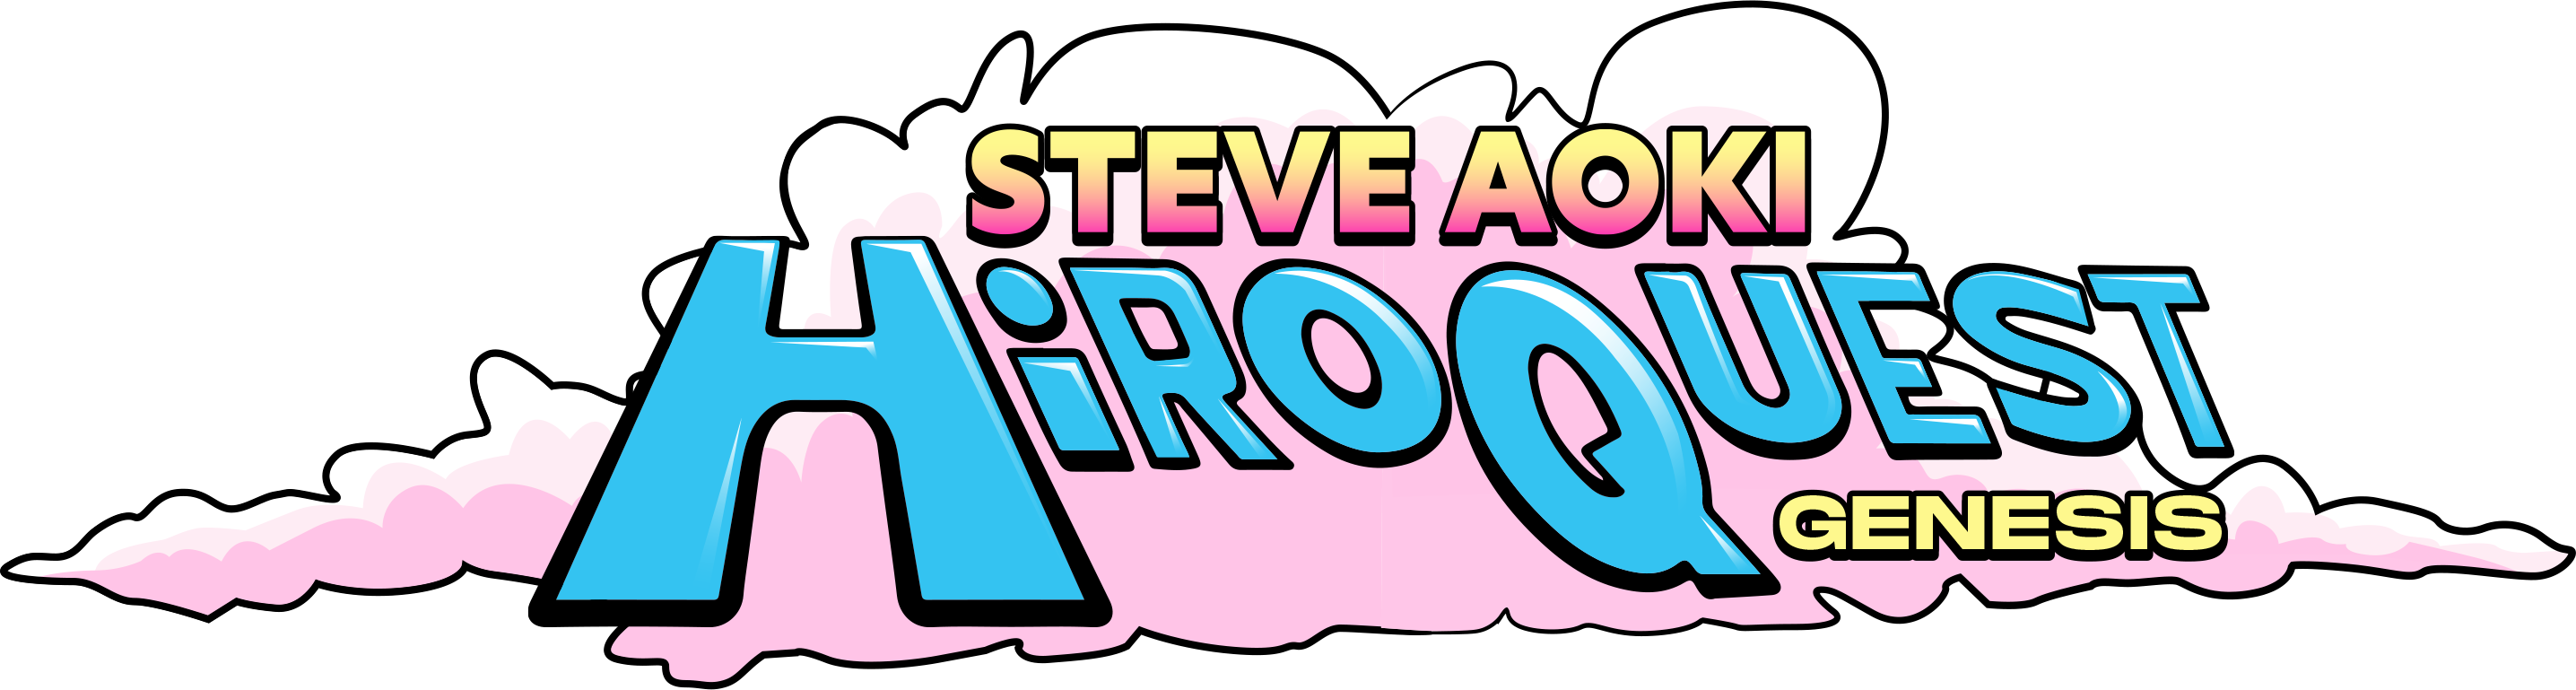 Steve Aoki Hiroquest Genesis